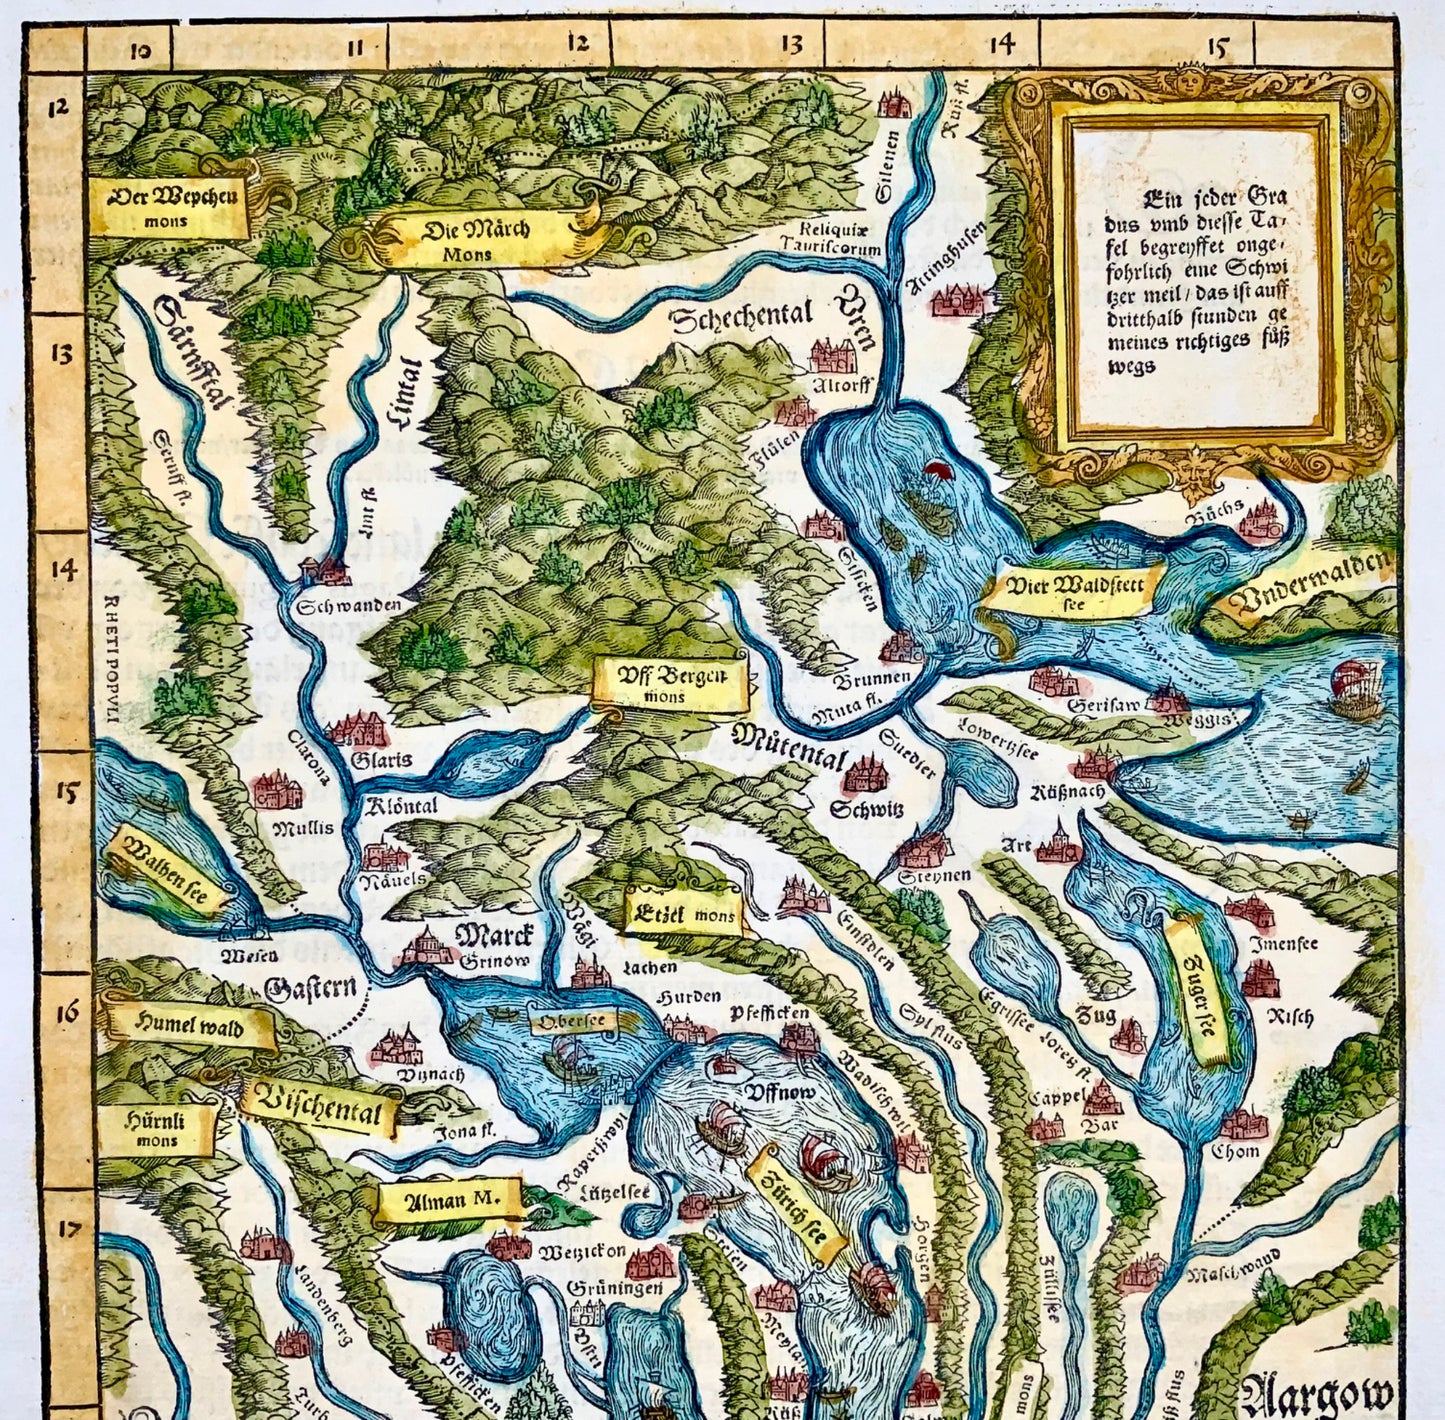 1548 Joh. Stumpf, Zurich, Lucerne, Zug, Switzerland folio woodcut map